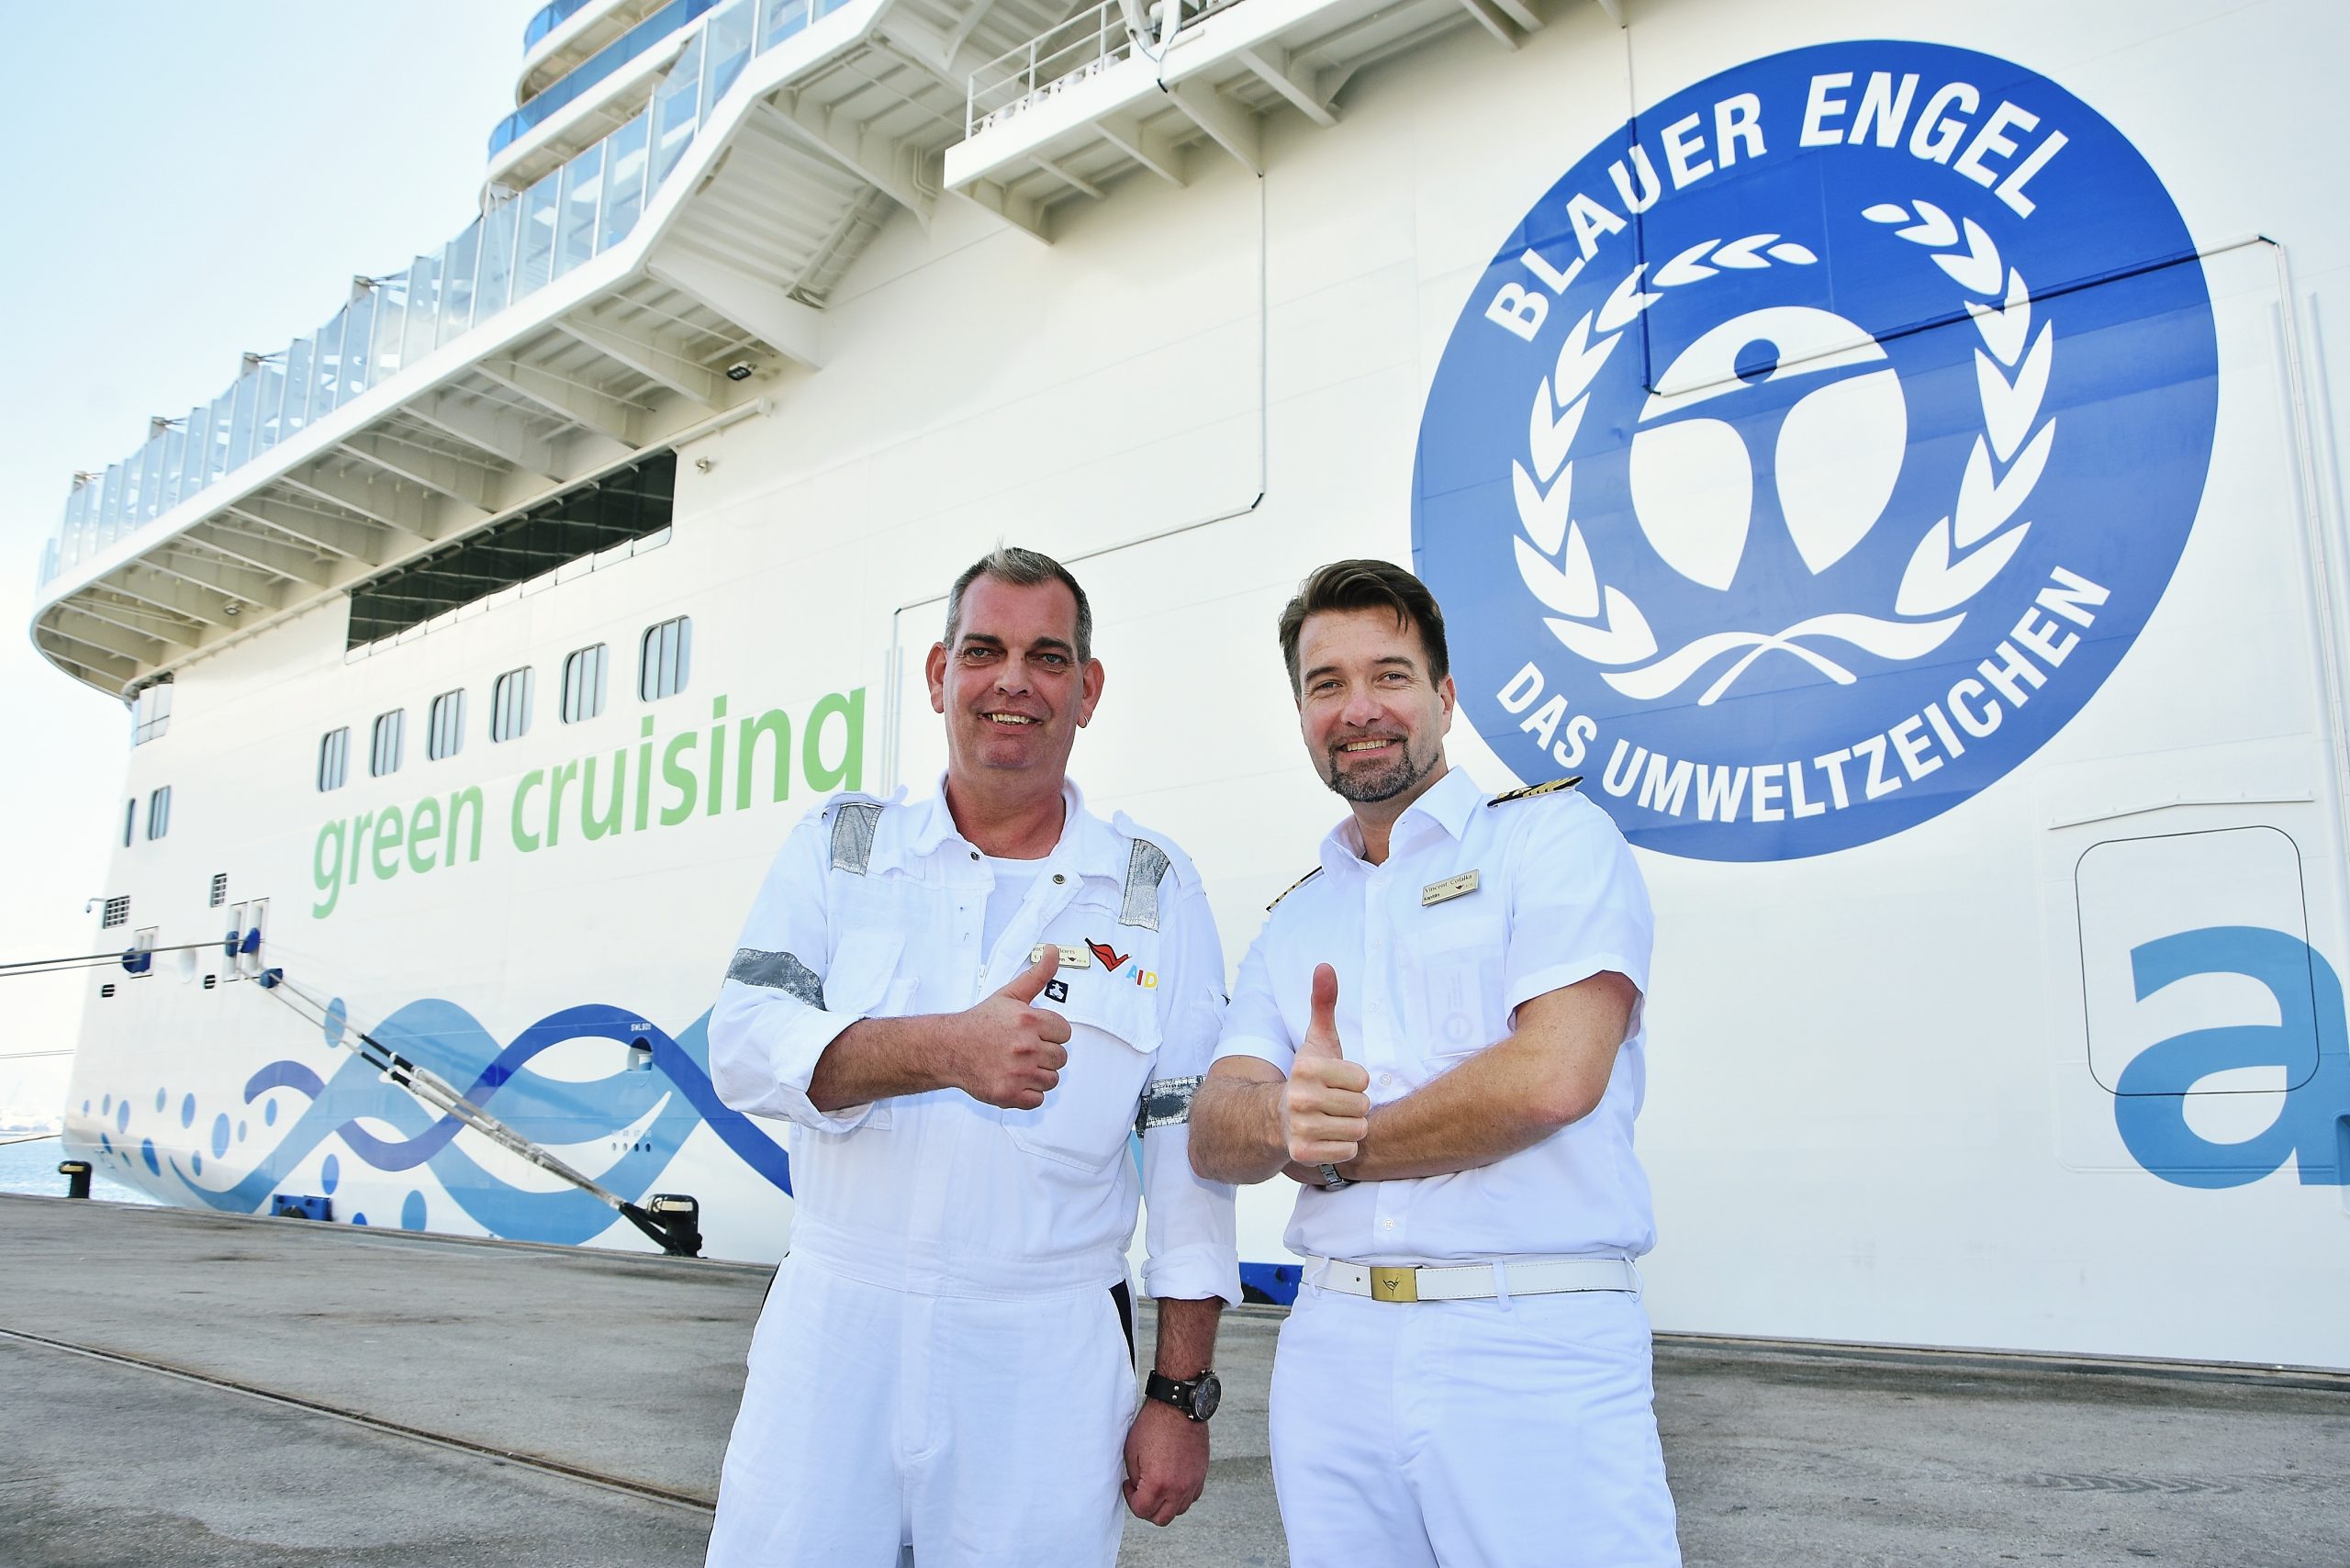 AIDA Cruises veröffentlicht Nachhaltigkeitsbericht 2019